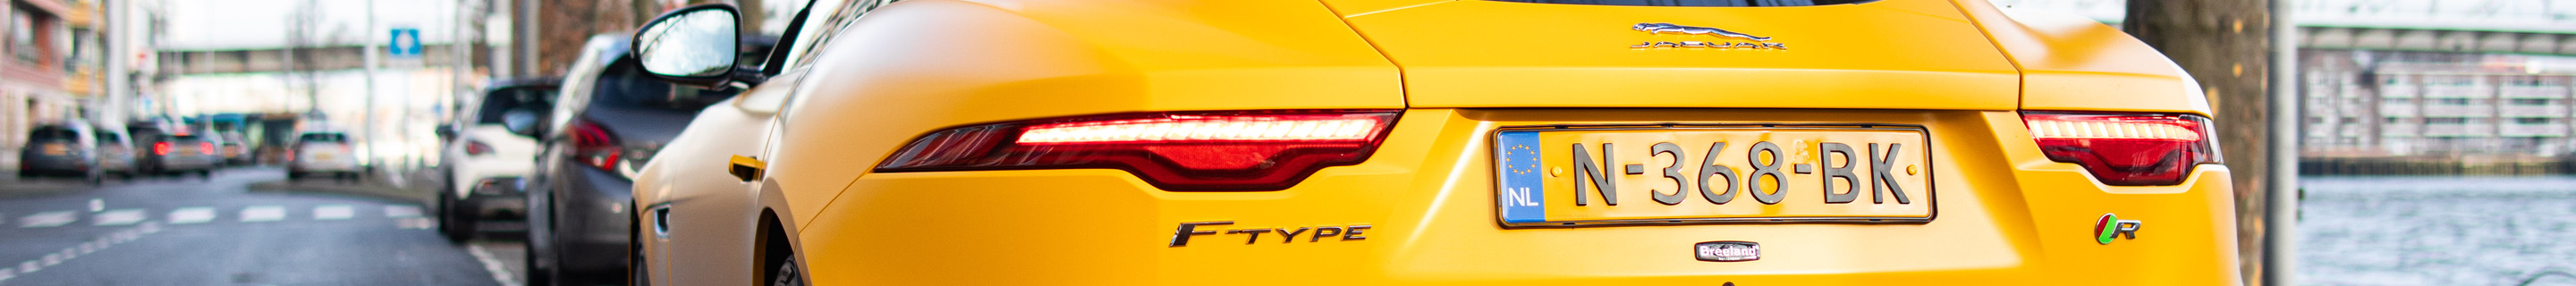 Jaguar F-TYPE R Coupé 2020